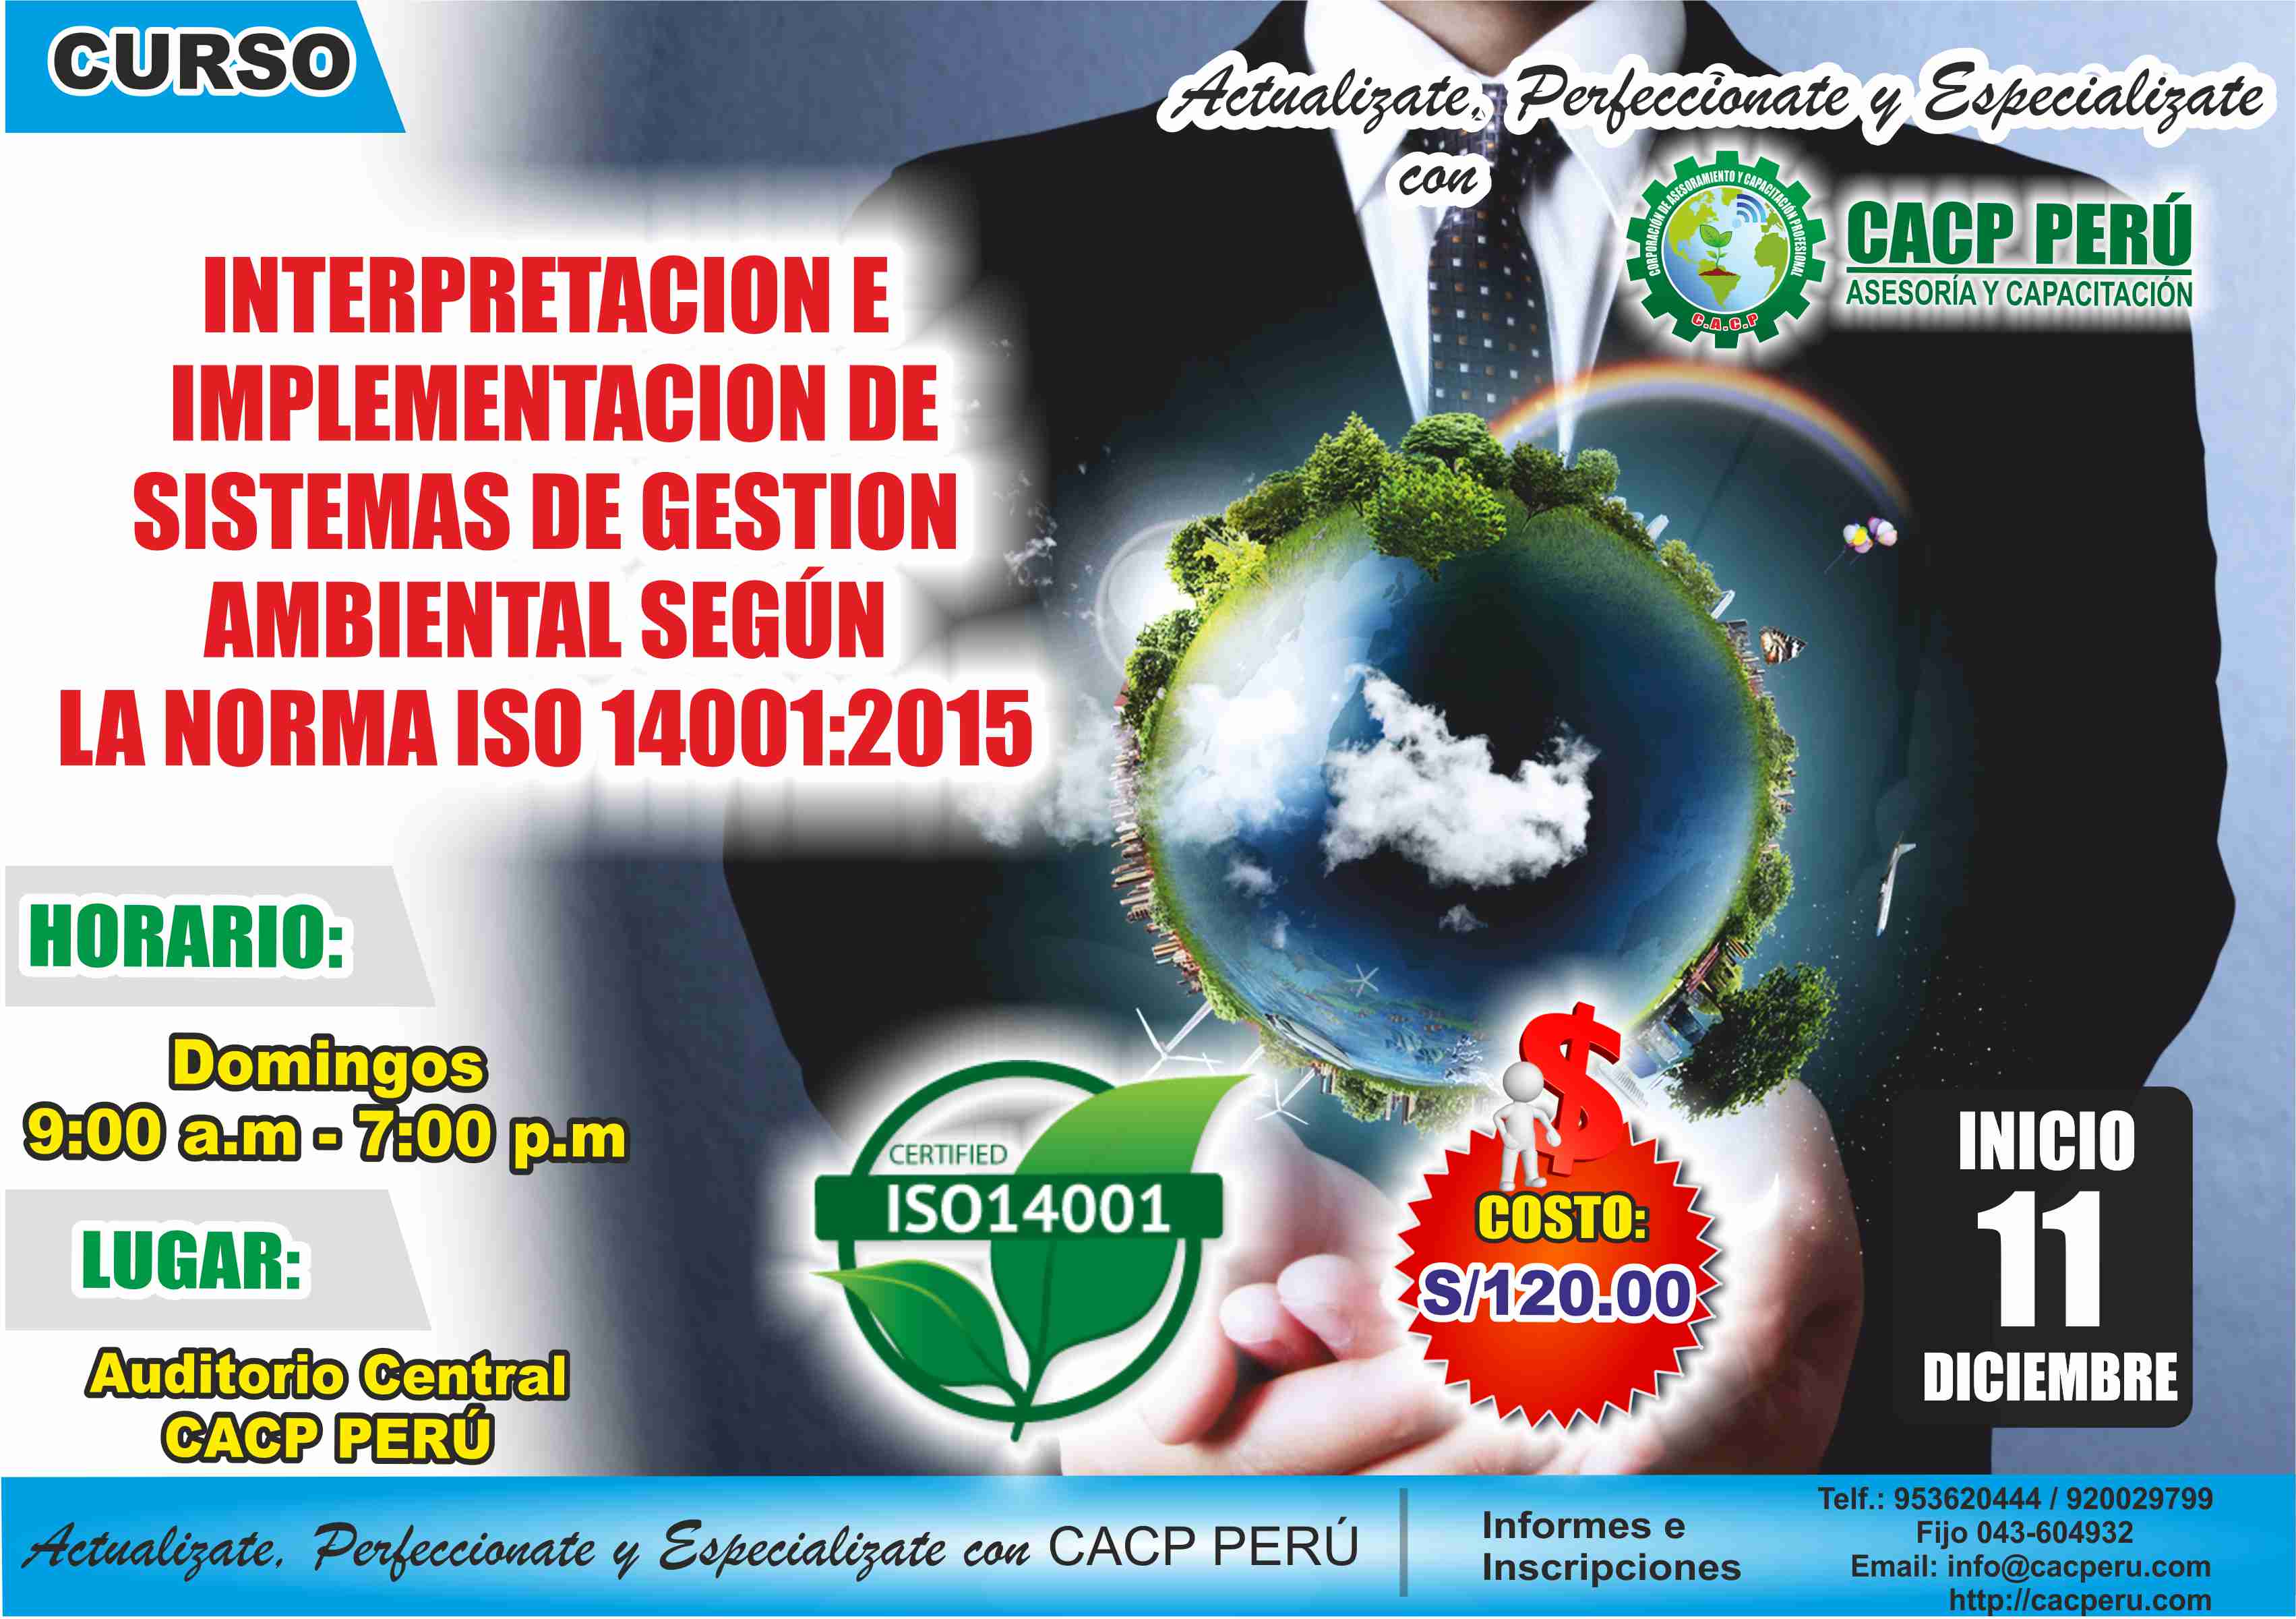 Cacp Perú Curso Interpretacion E Implementacion De Sistemas De Gestion Ambiental Según La 2709